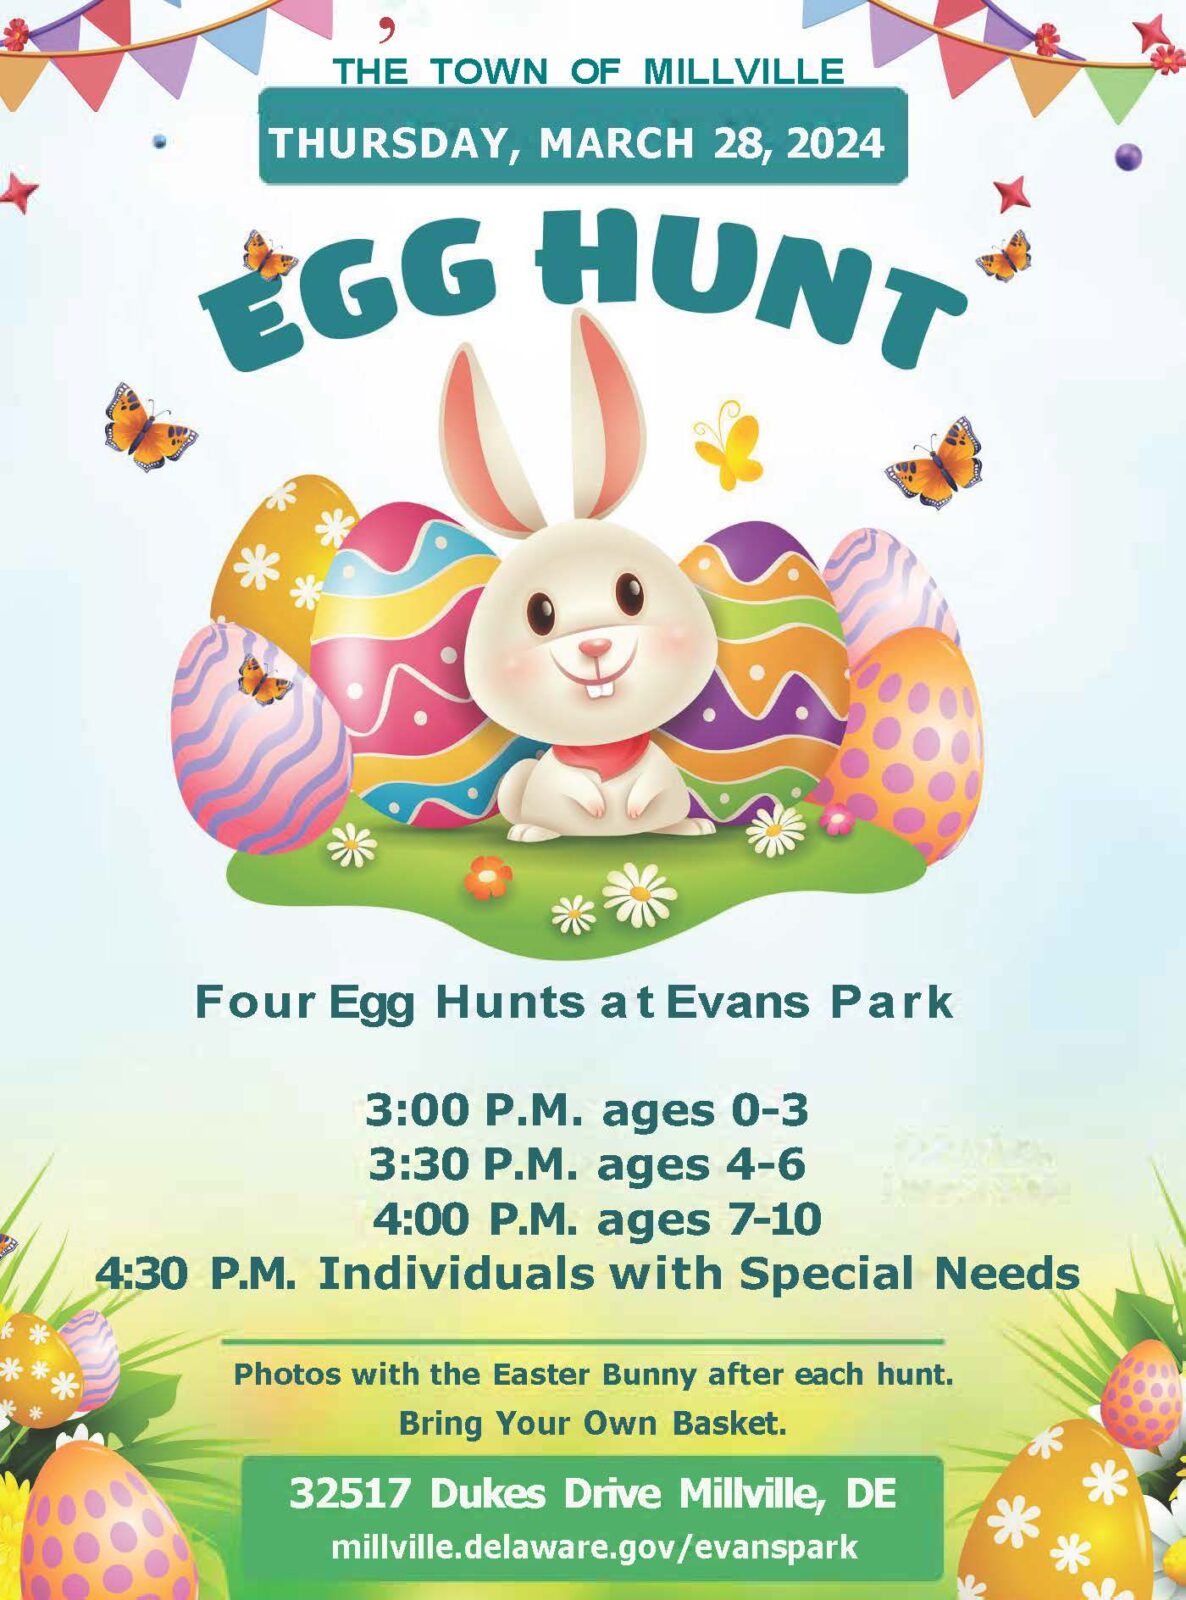 EASTER EGG HUNT – March 28, 2024 at Evans Park